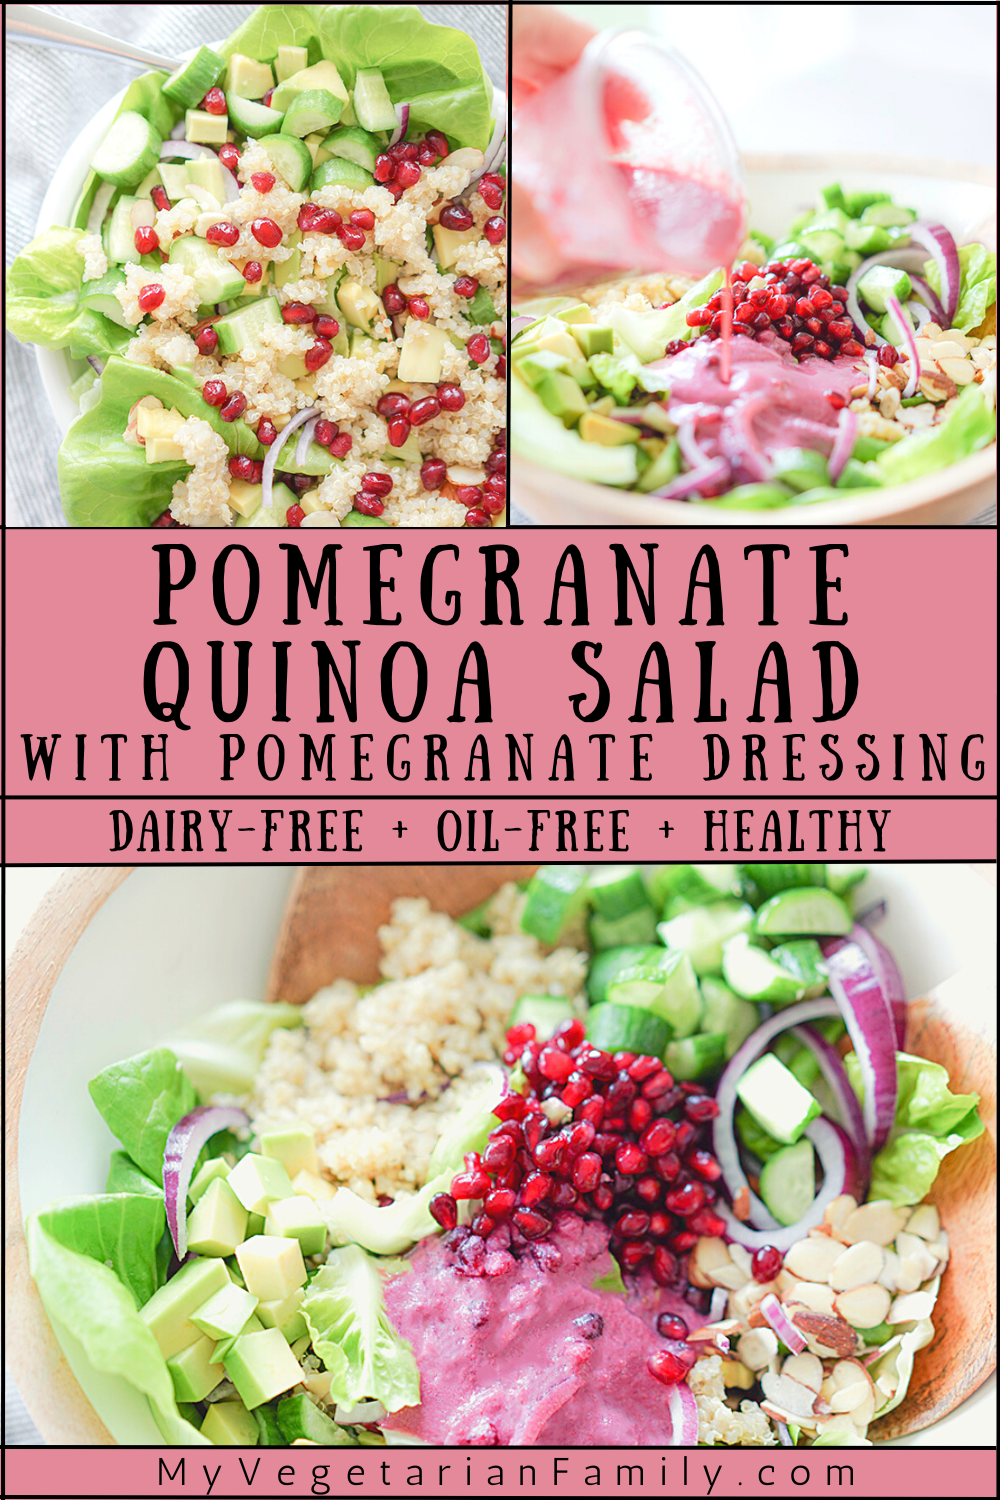 Pomegranate Quinoa Salad with Pomegranate Dressing | My Vegetarian Family #vegan #pomegranatesalad